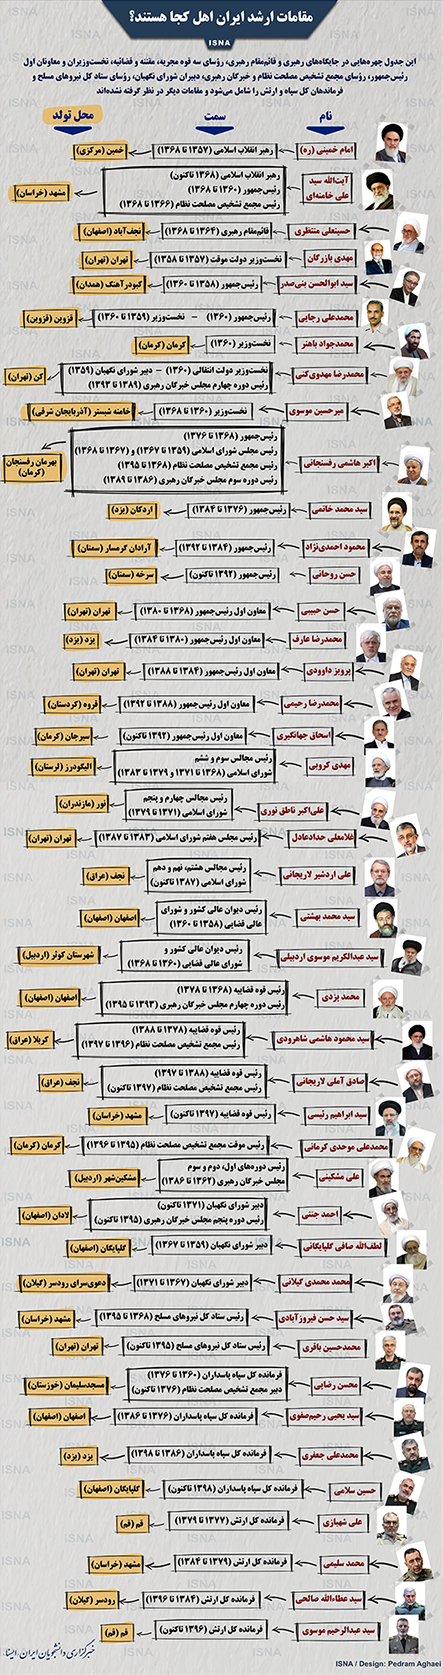 مقامات بلندپایه ایران اهل کجا هستند؟/اصفهان رکورددار صدور مسئول به نظام